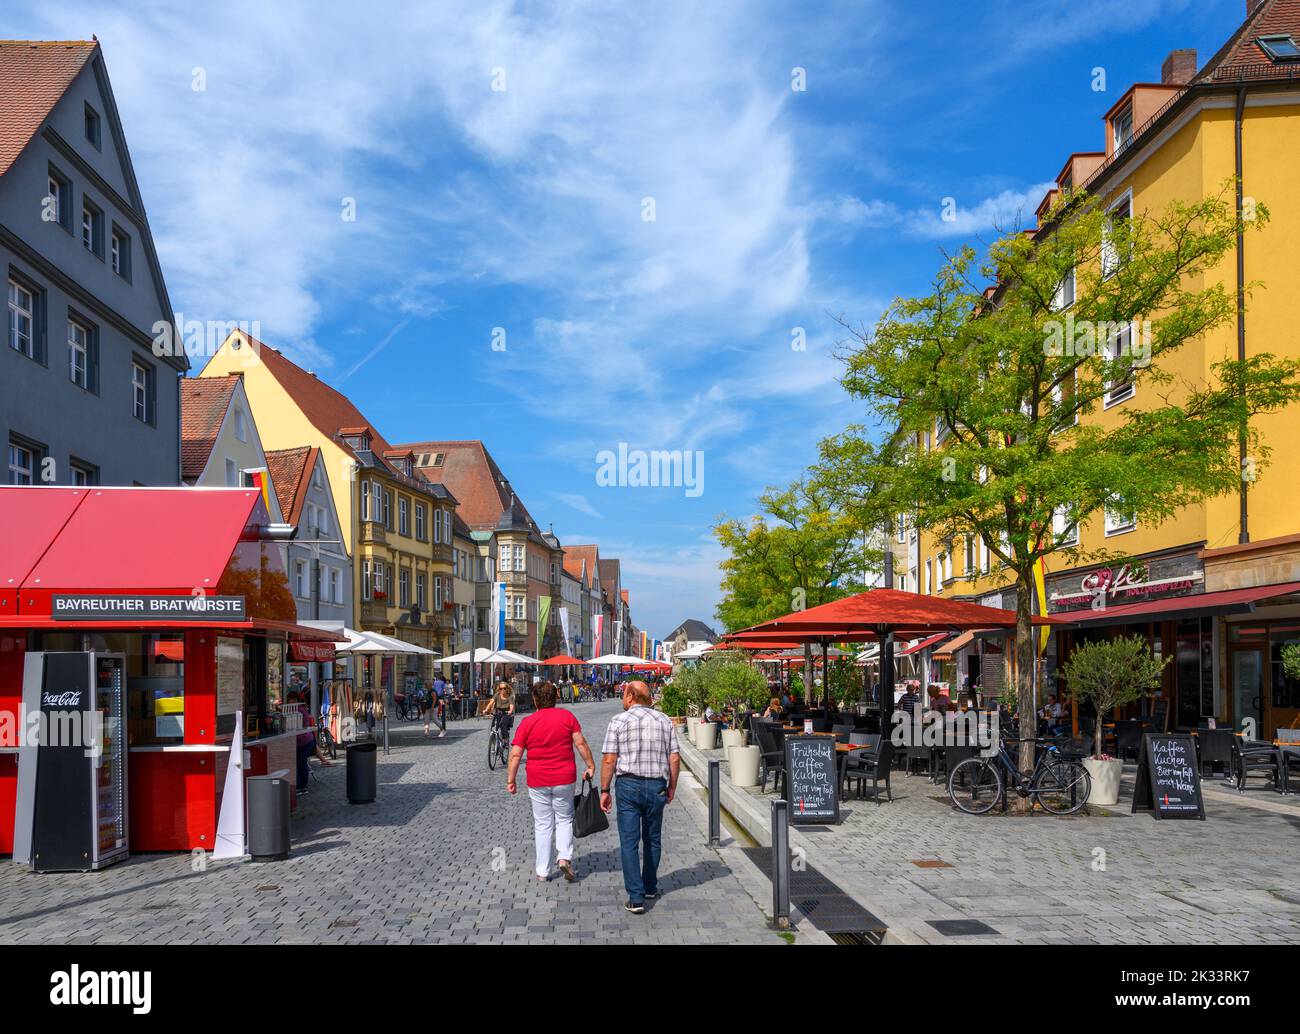 Blick in die Maximilianstraße, Bayreuth, Bayern, Deutschland Stockfoto